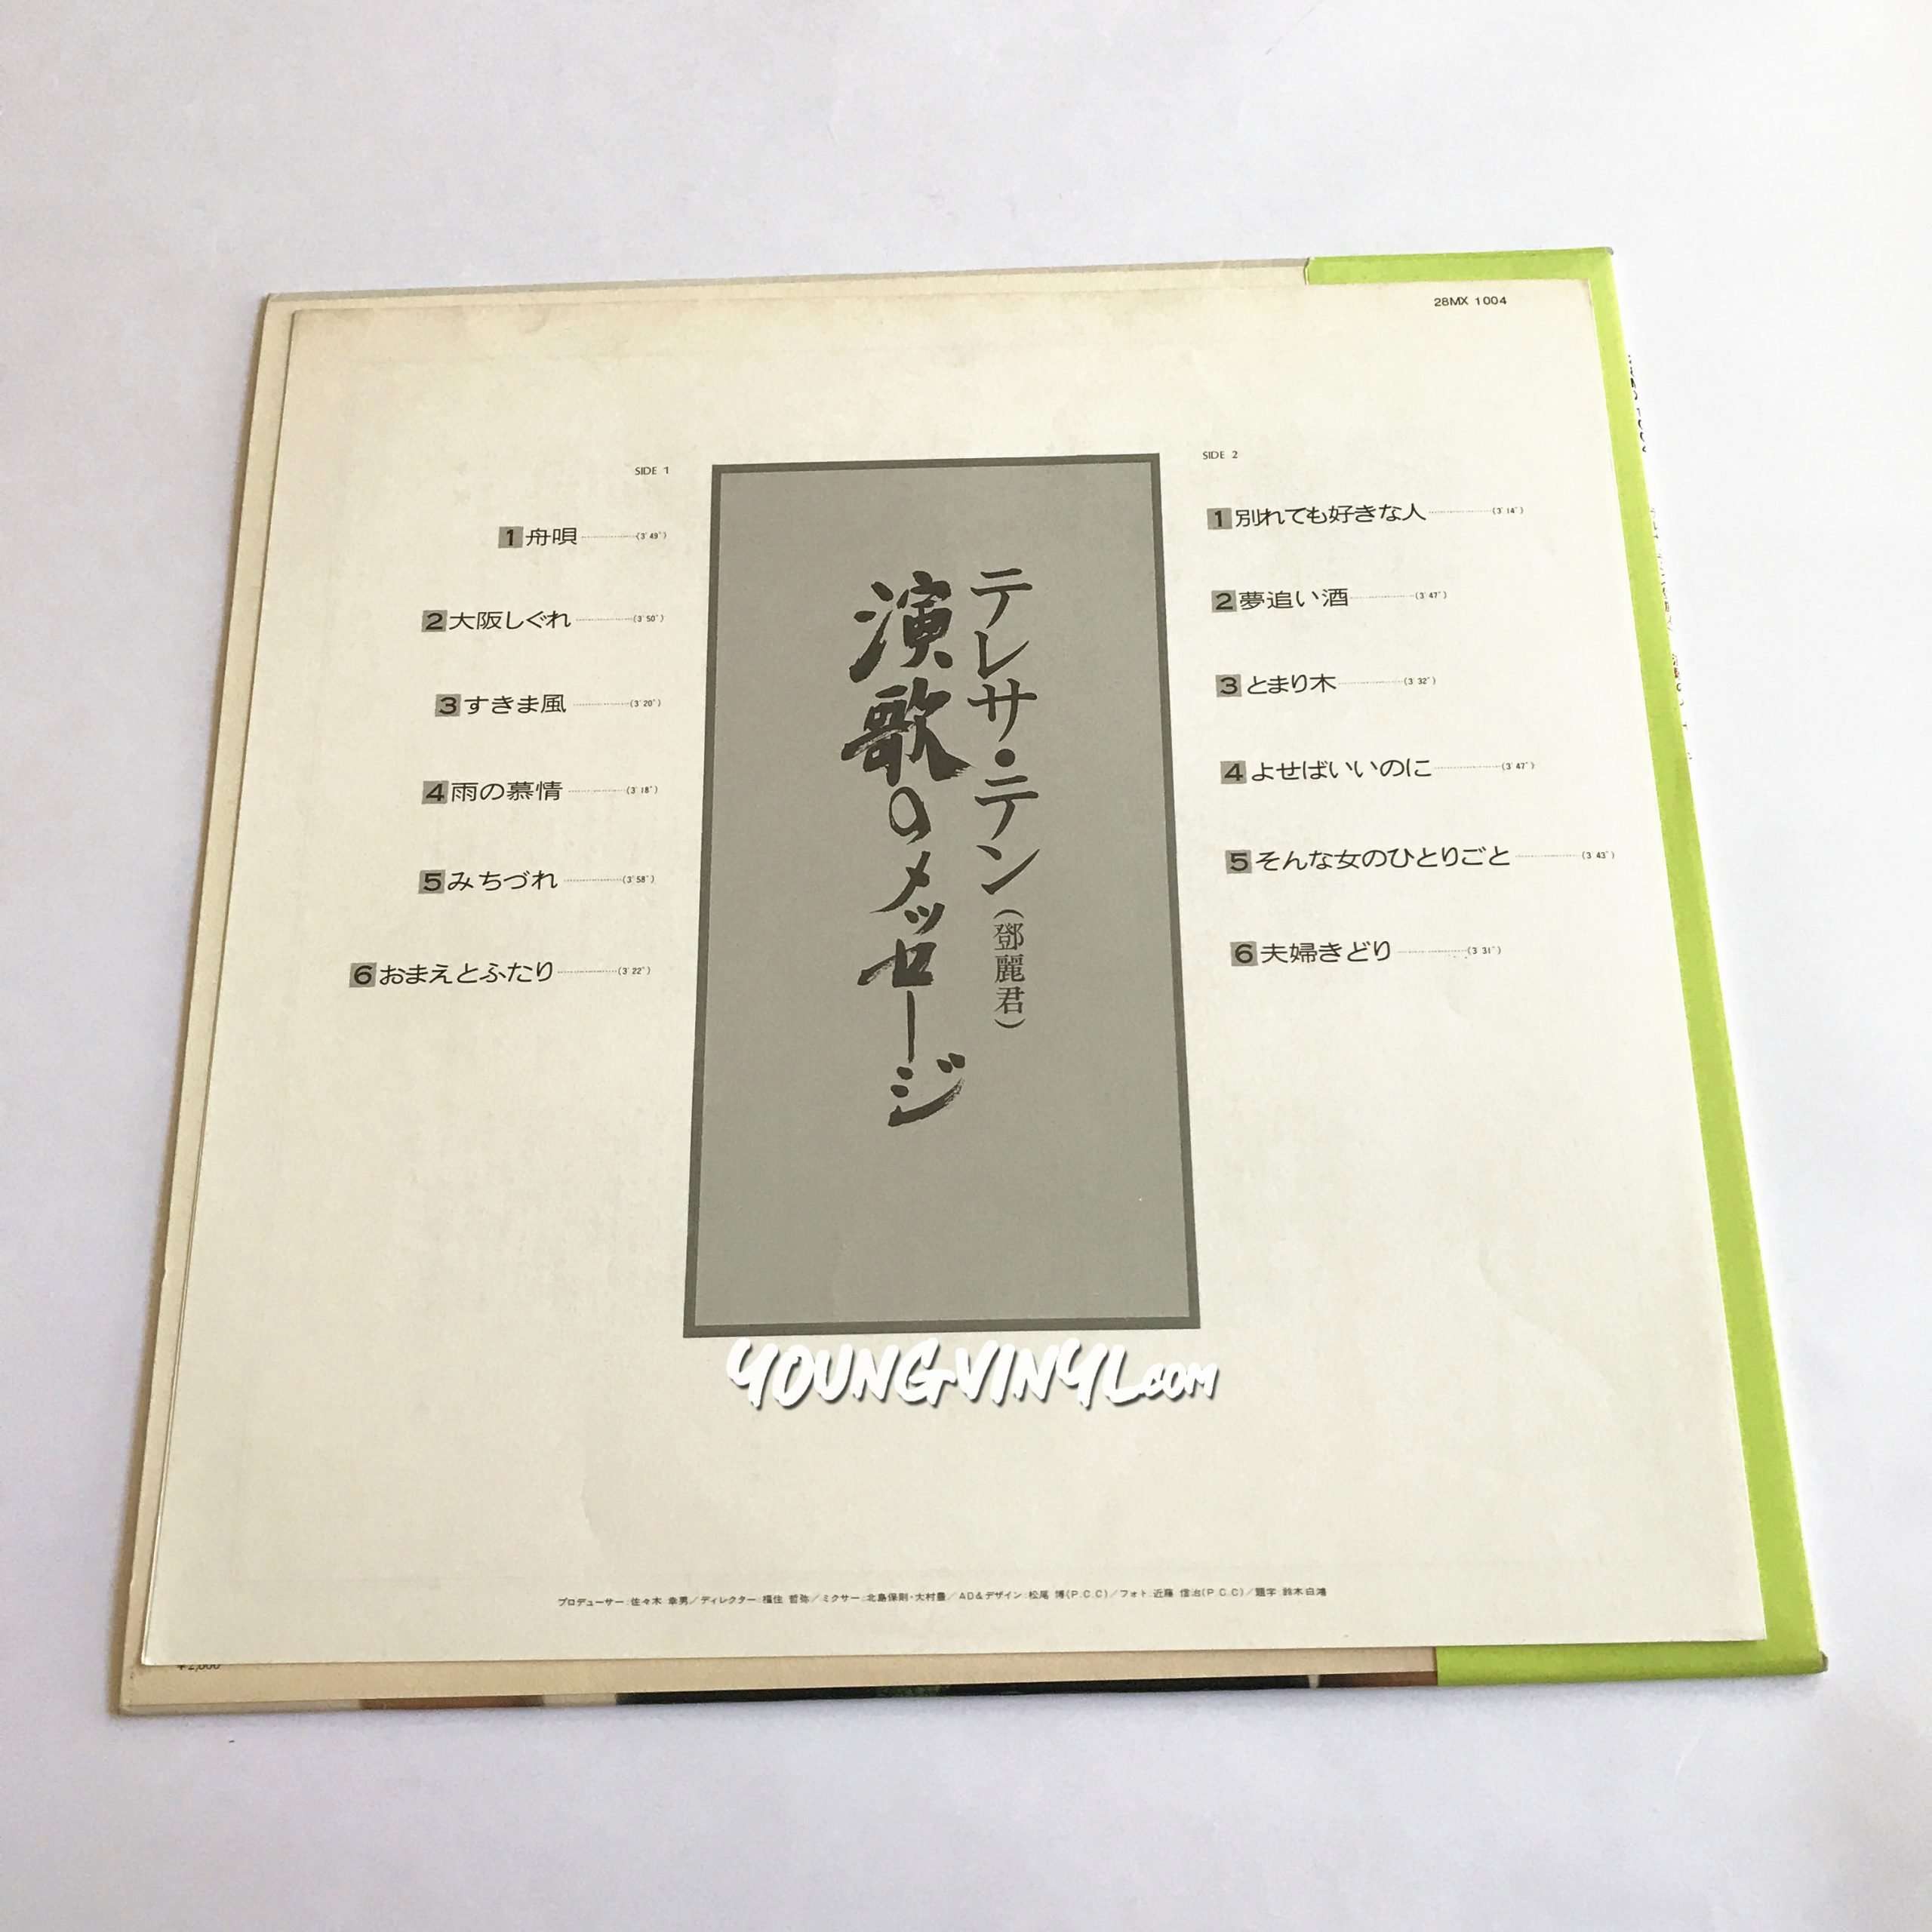 Teresa Teng 演歌のメッセージ Vinyl 鄧麗君 テレサ・テン 黑膠唱片